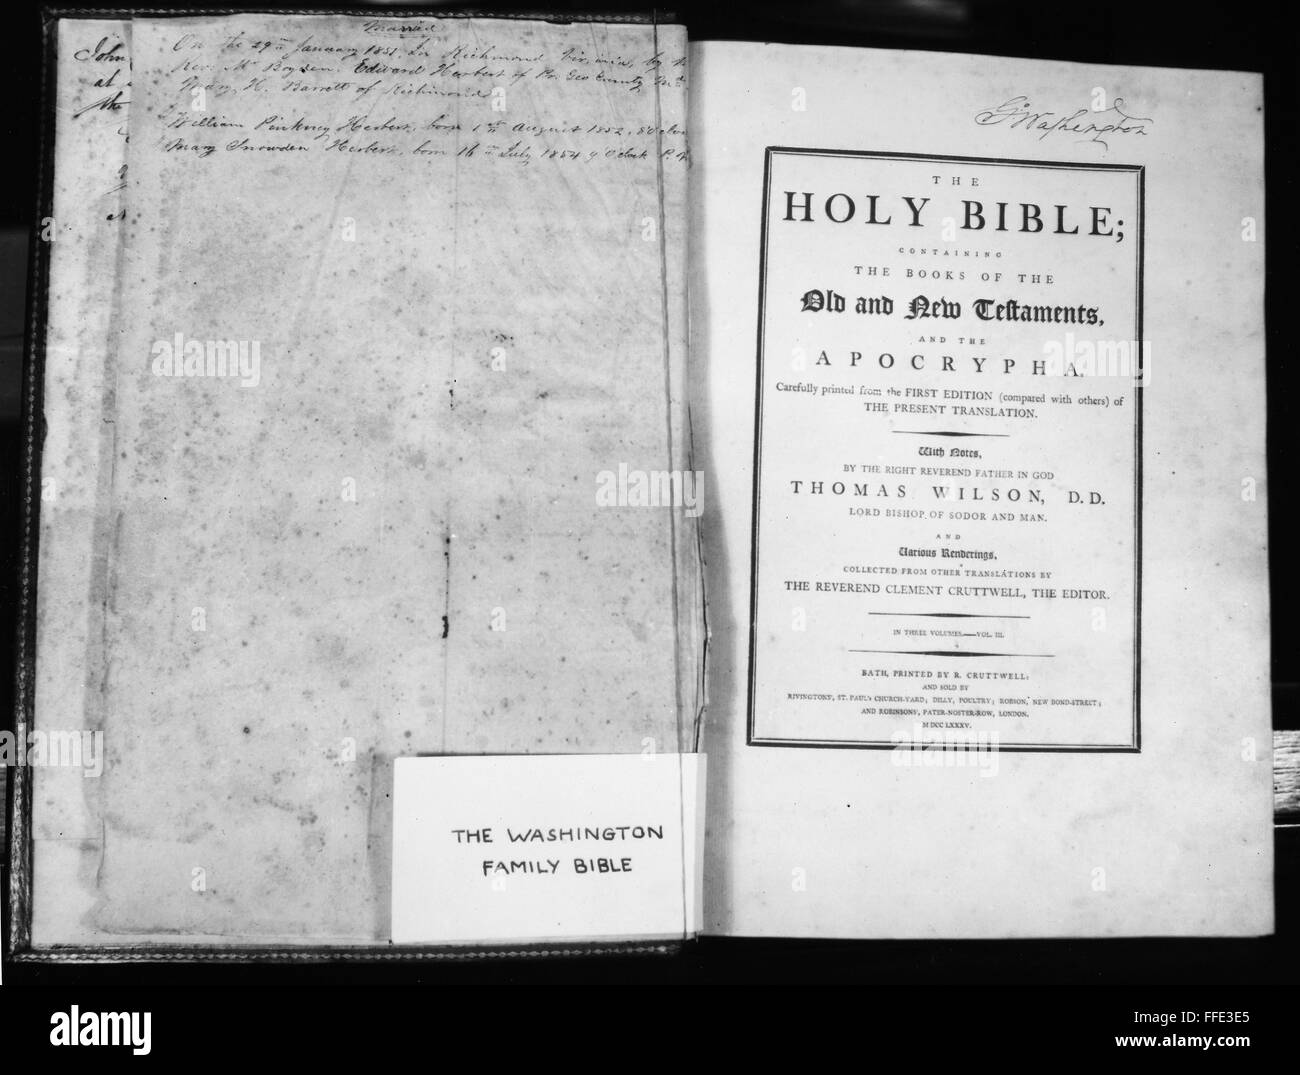 WASHINGTON: BIBLE. /nBible owned by George Washington. Stock Photo